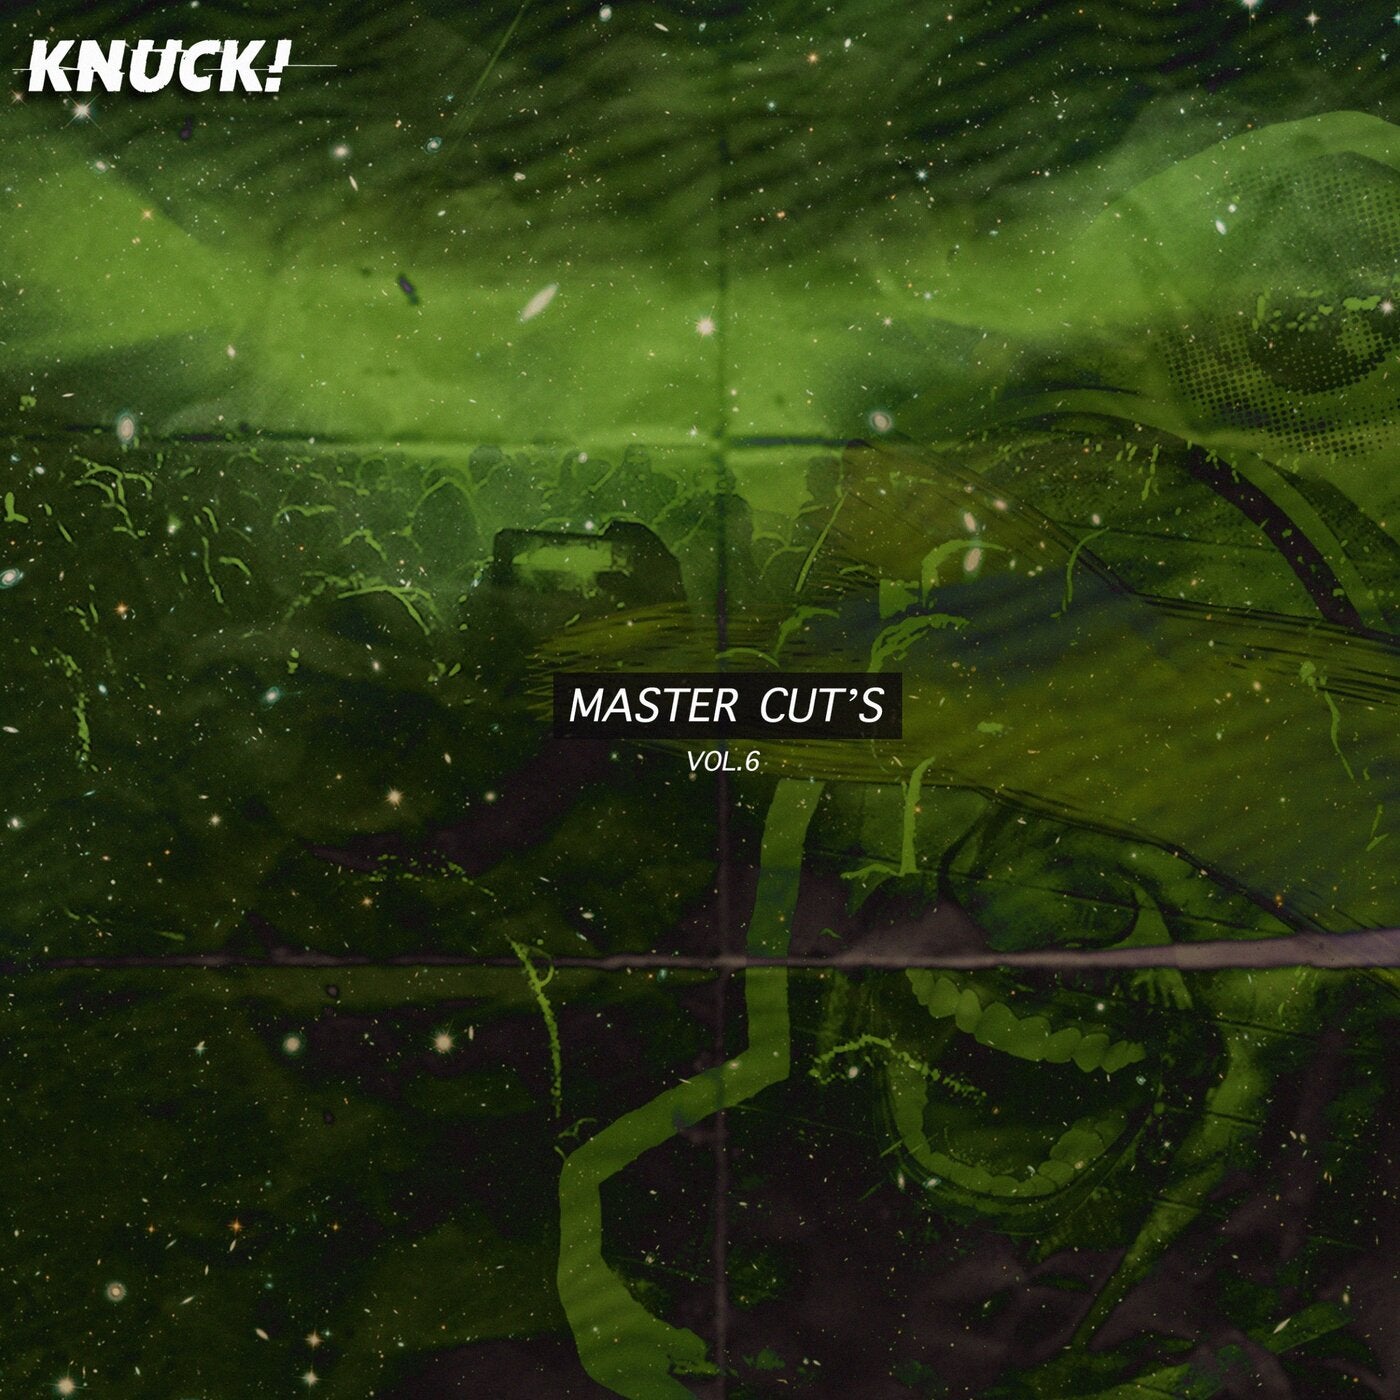 Master Cut's, Vol. 6